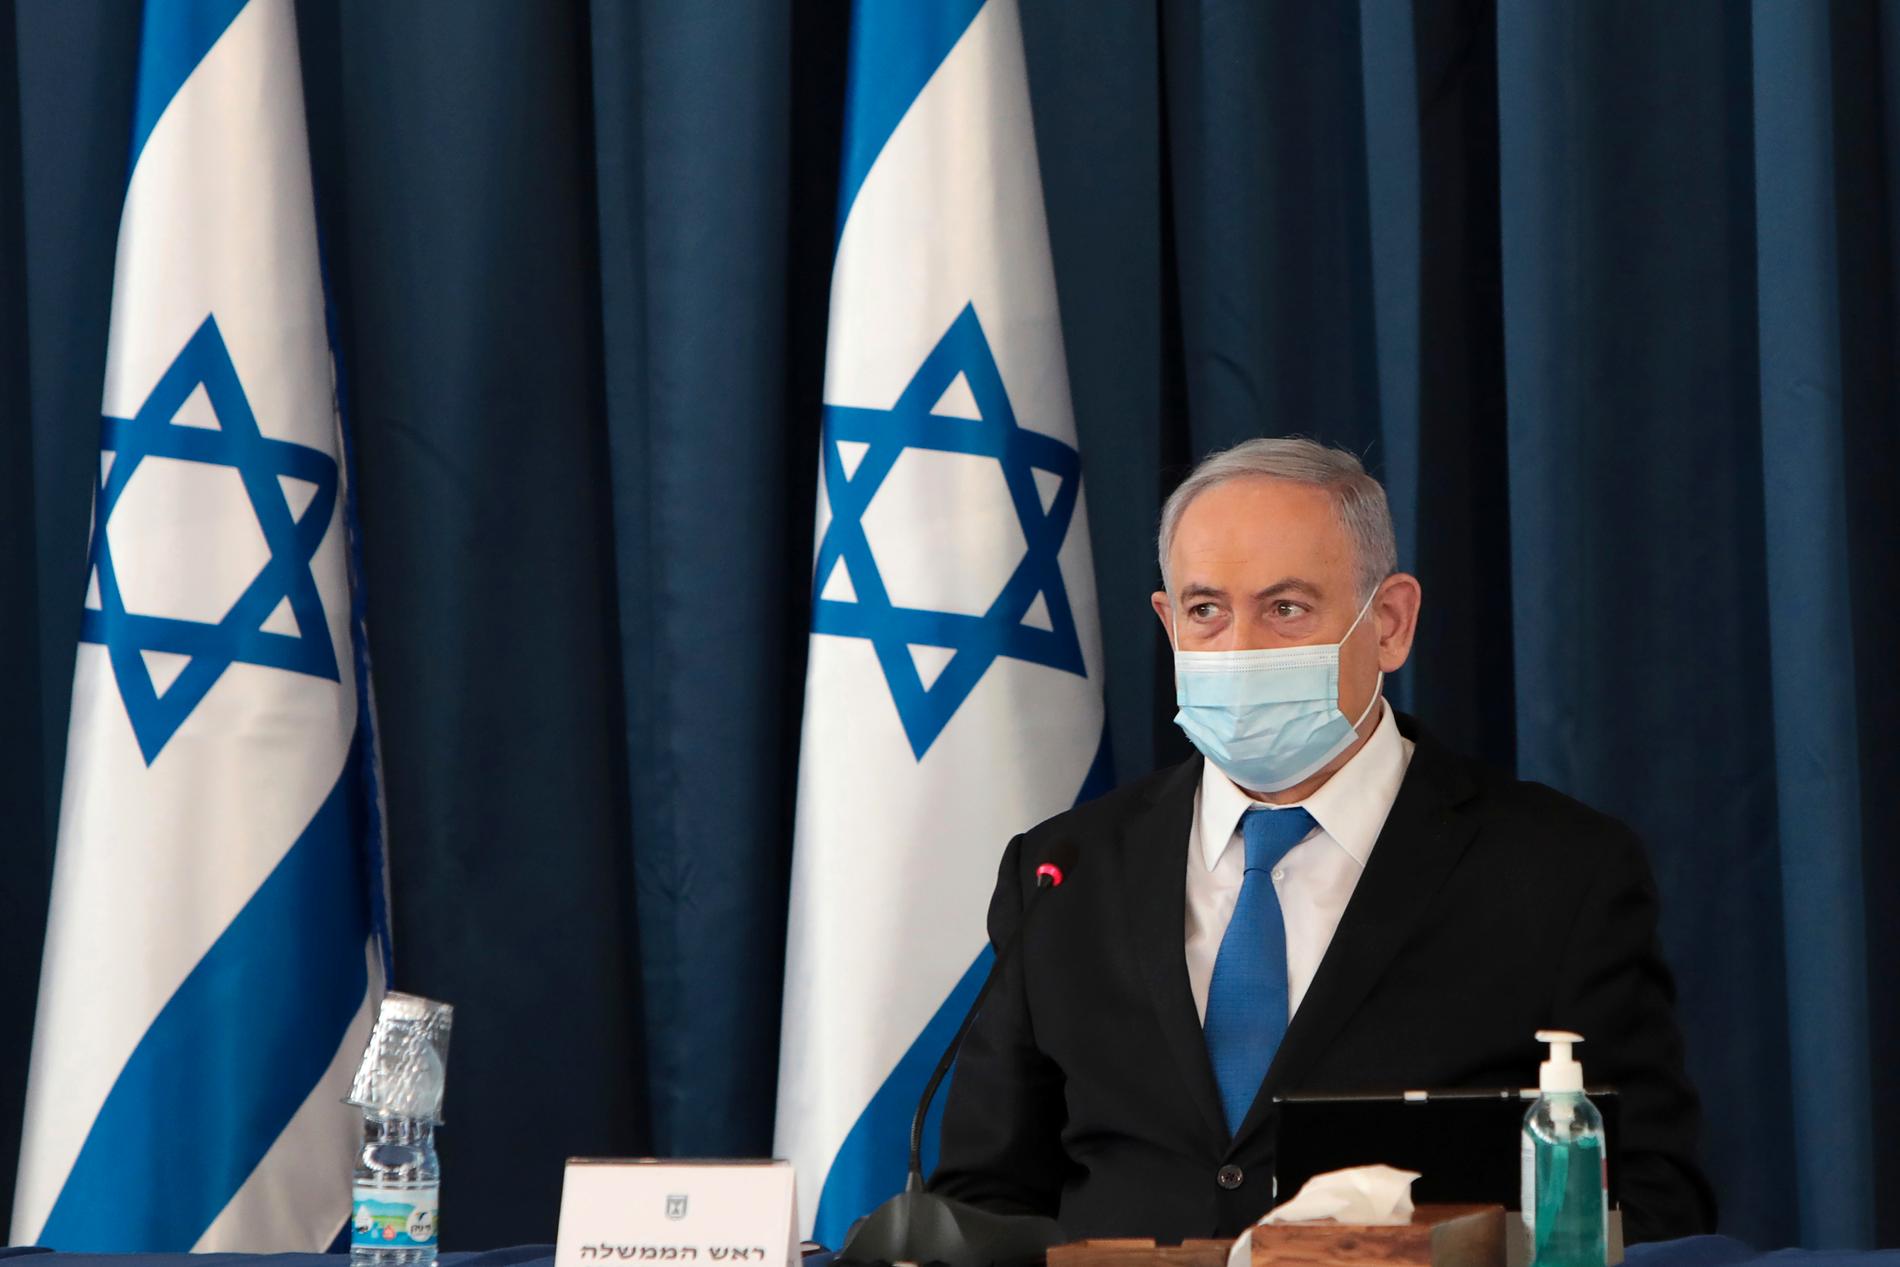 Protesterna riktar sig mot hur Israels regering har hanterat coronapandemins ekonomiska konsekvenser. På bilden syns premiärminister Benjamin Netanyahu. Arkivbild.